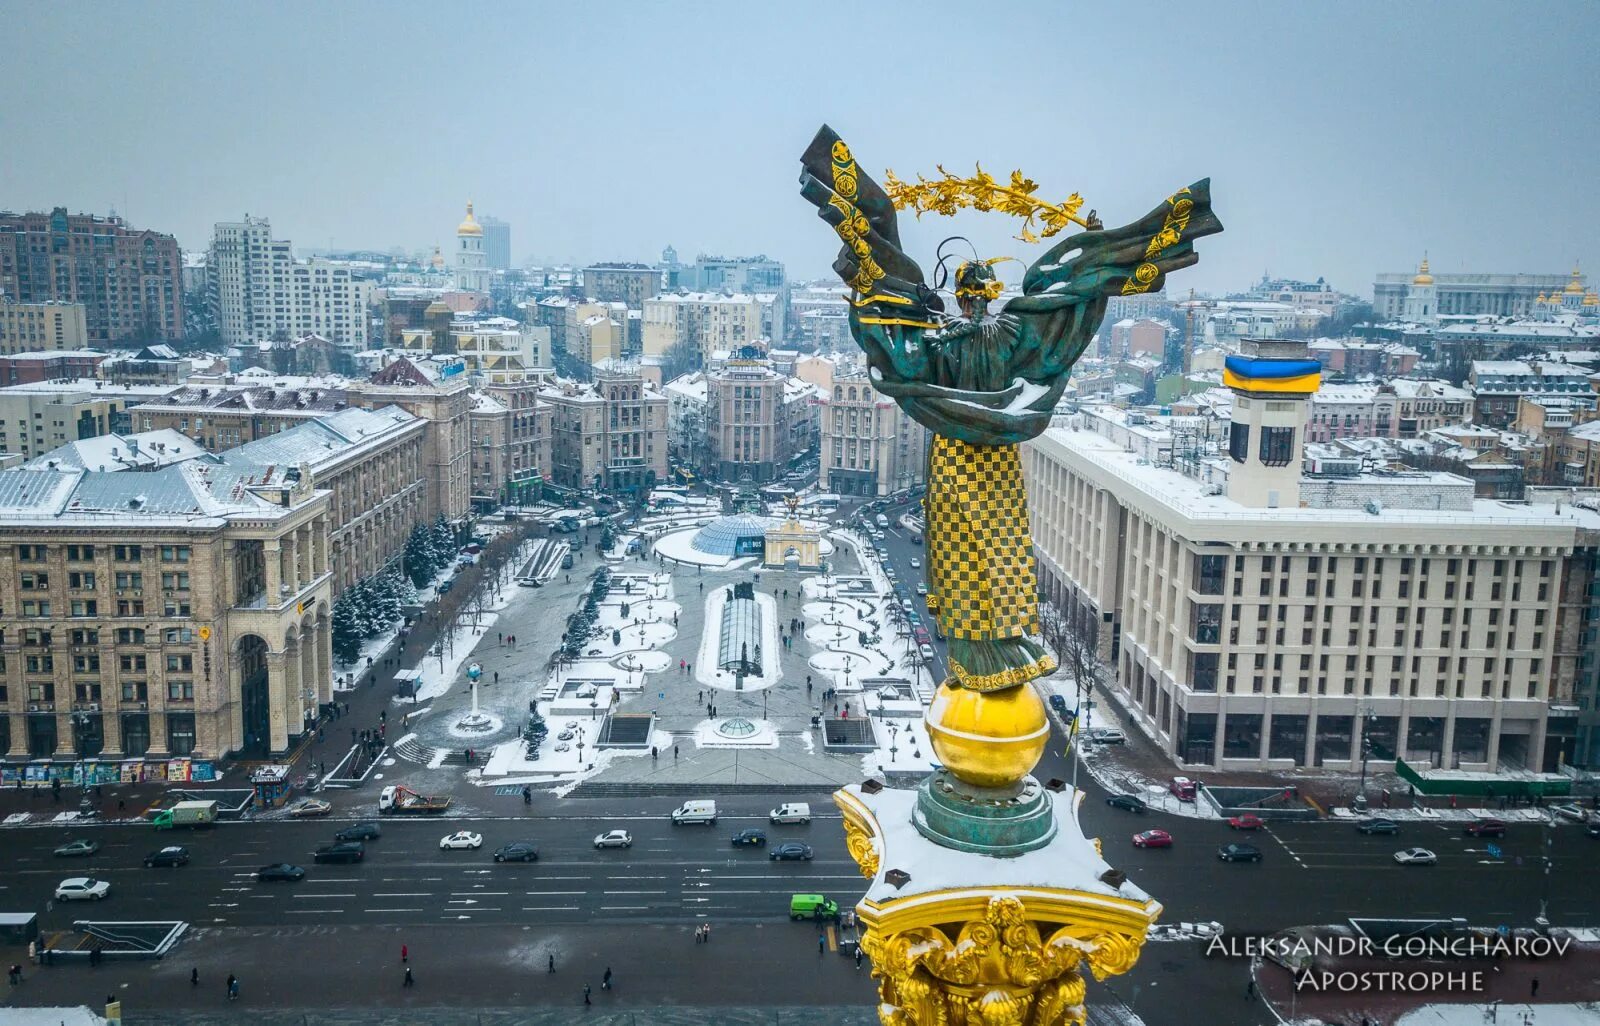 Какое население город киев